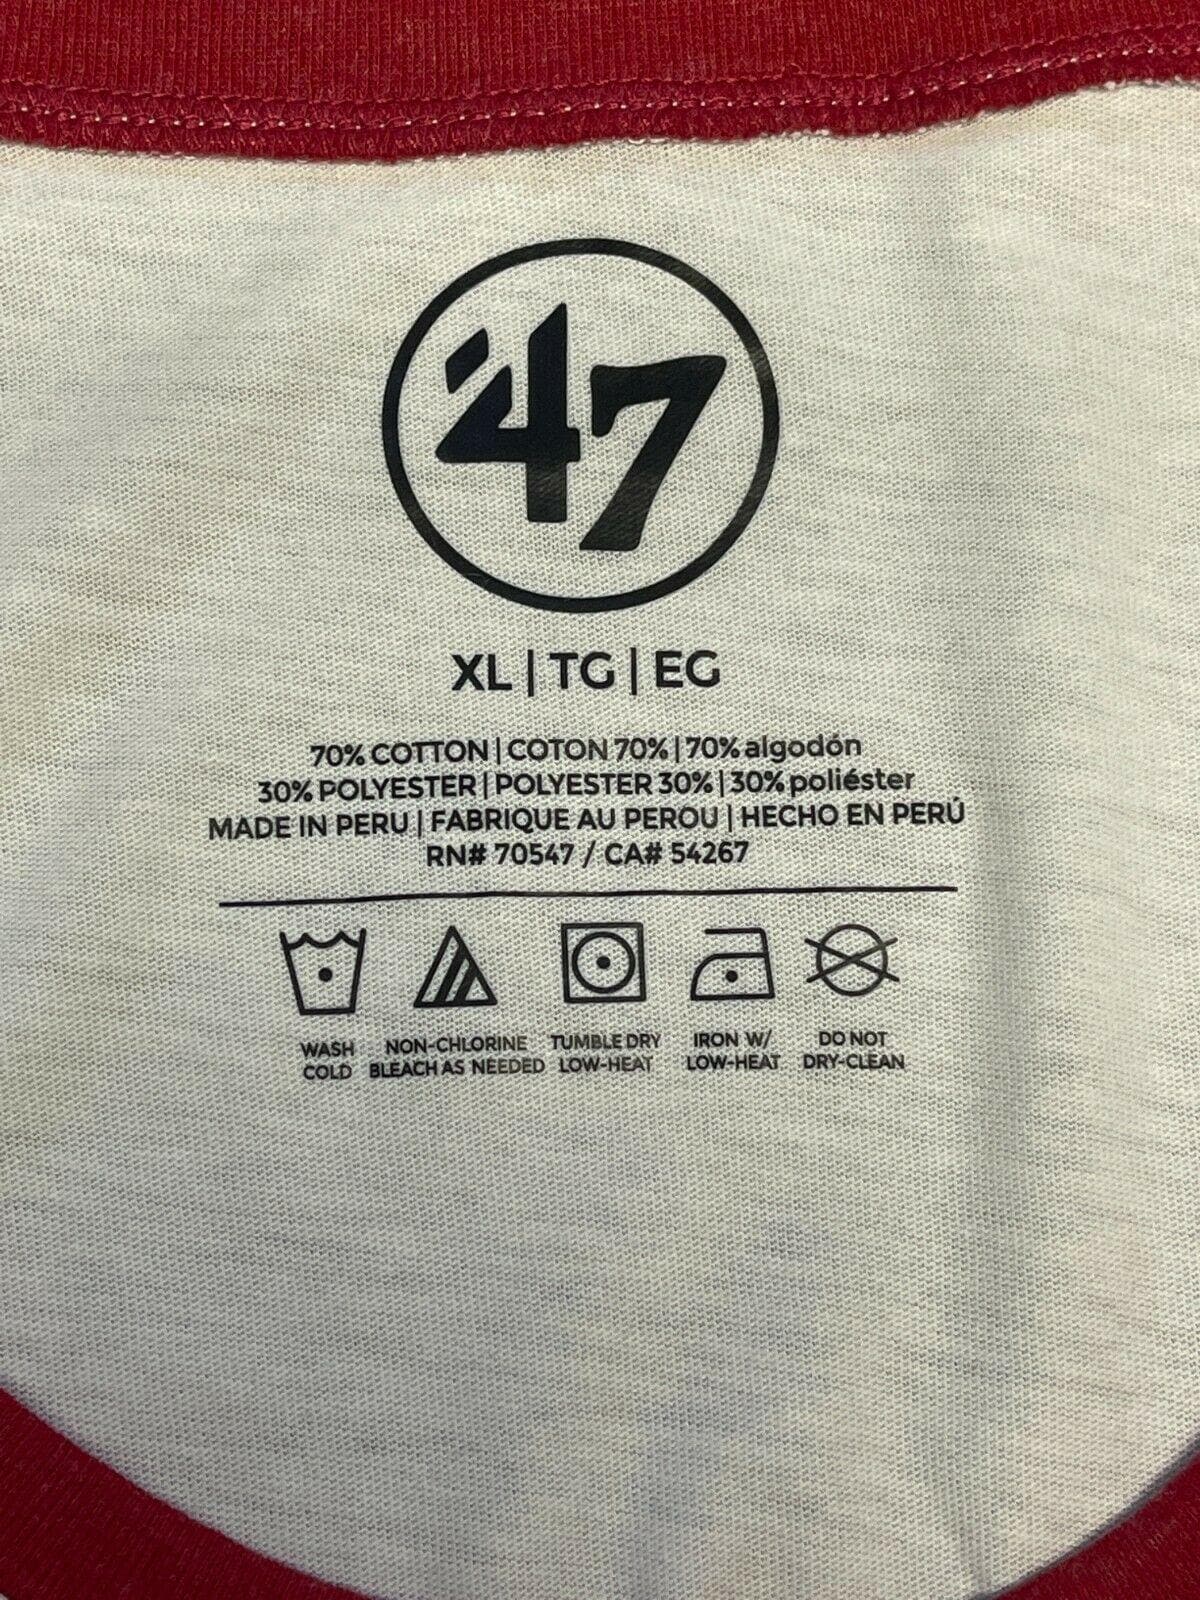 NFL New England Patriots '47 Raglan Splitter T-Shirt Women's XL NWOT